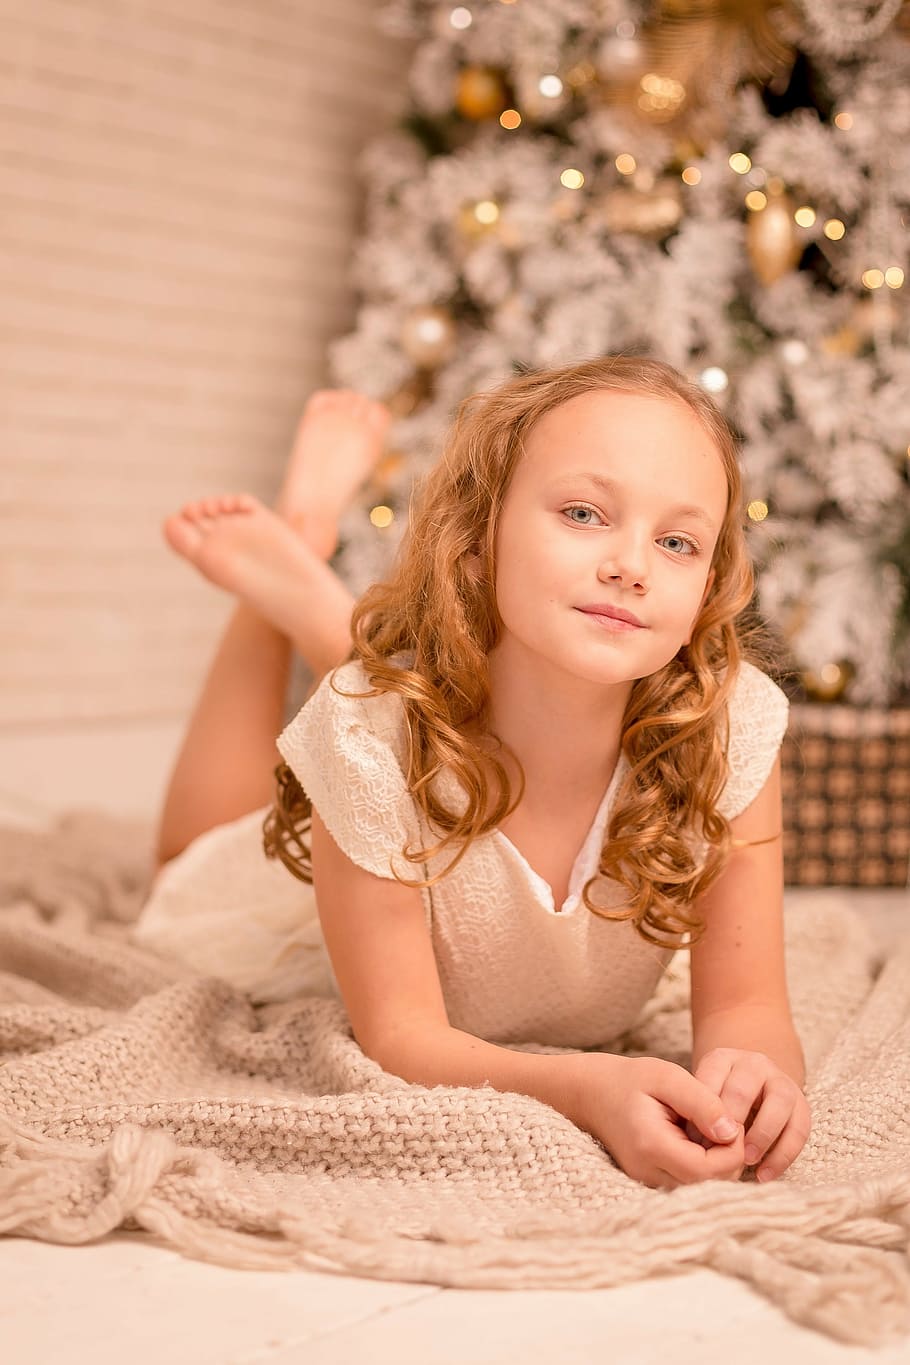 girl in white dress lying on floor near Christmas tree inside room, HD wallpaper